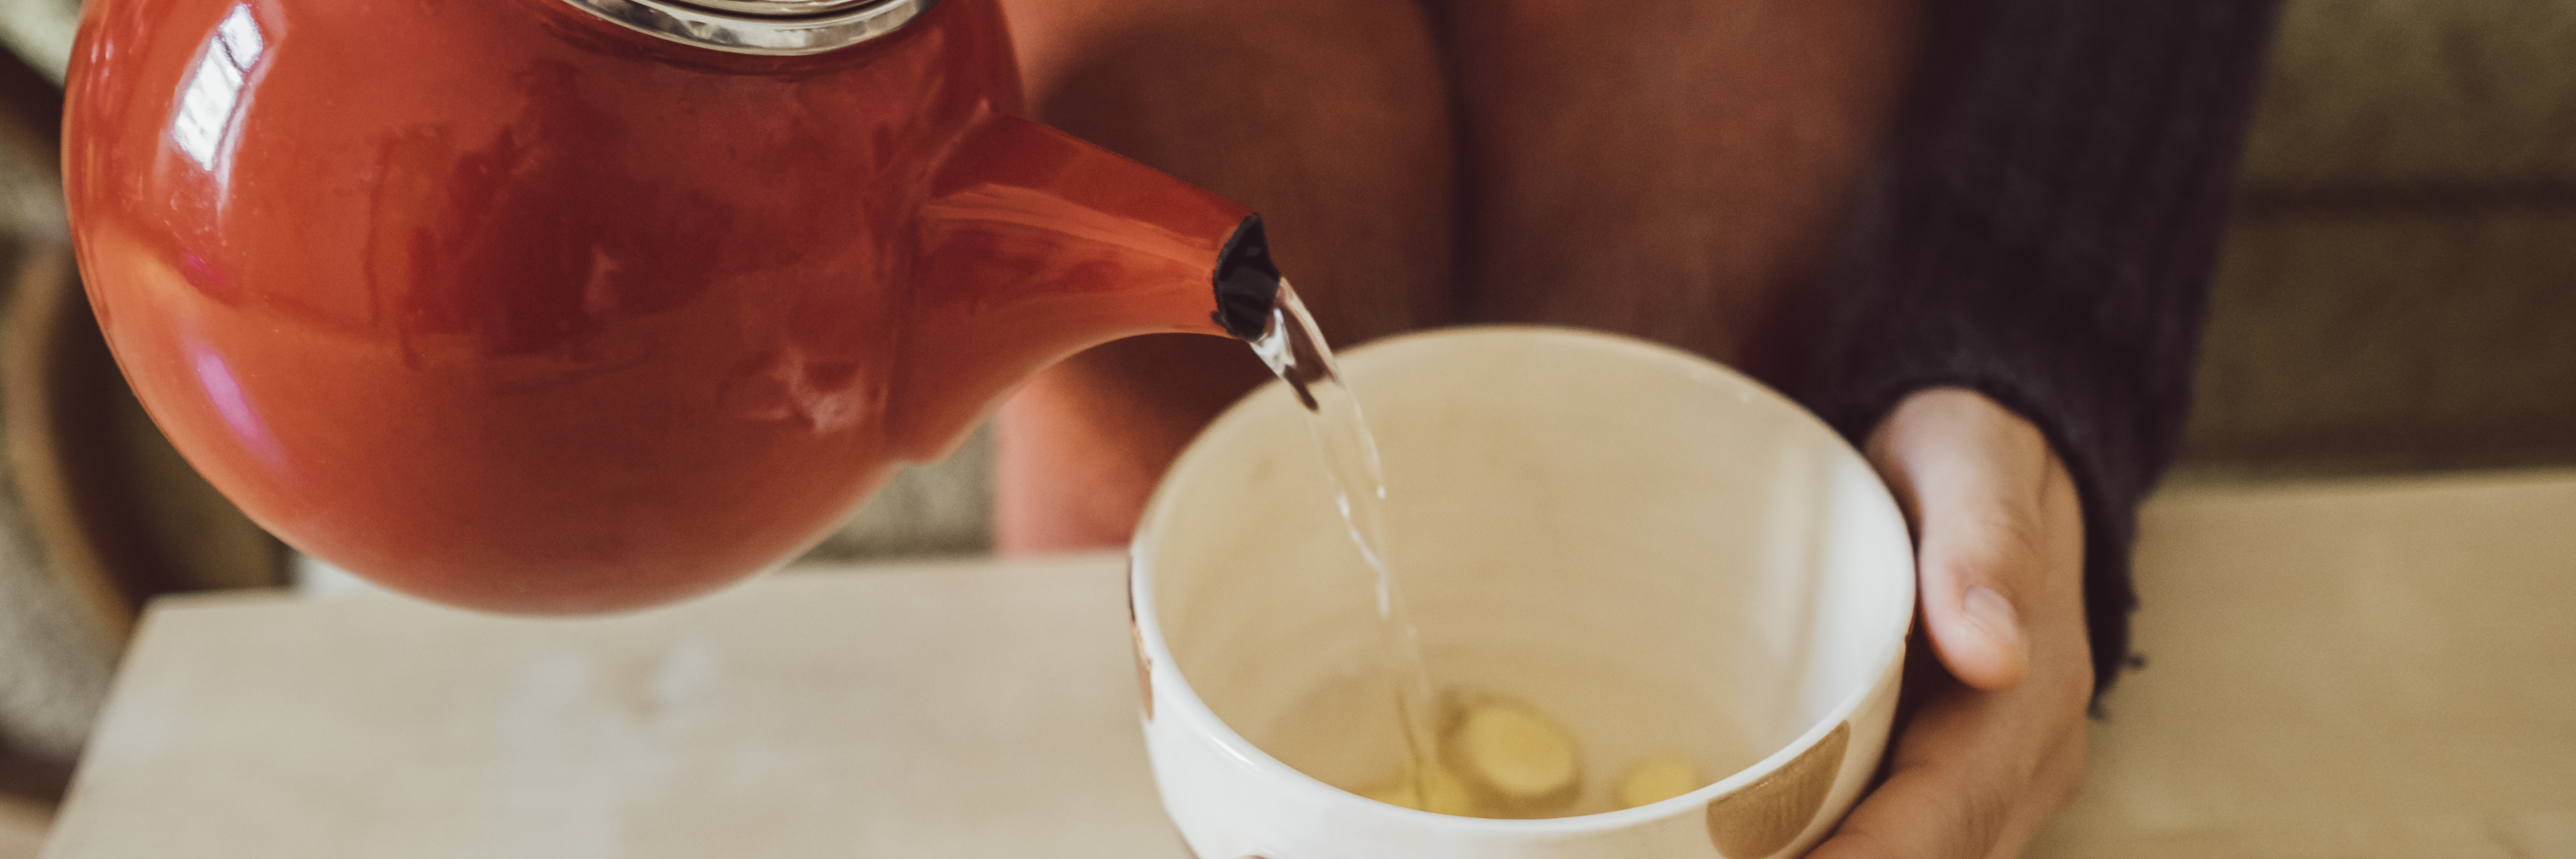 Frau schenkt Tee aus roter Kanne in eine Teetasse